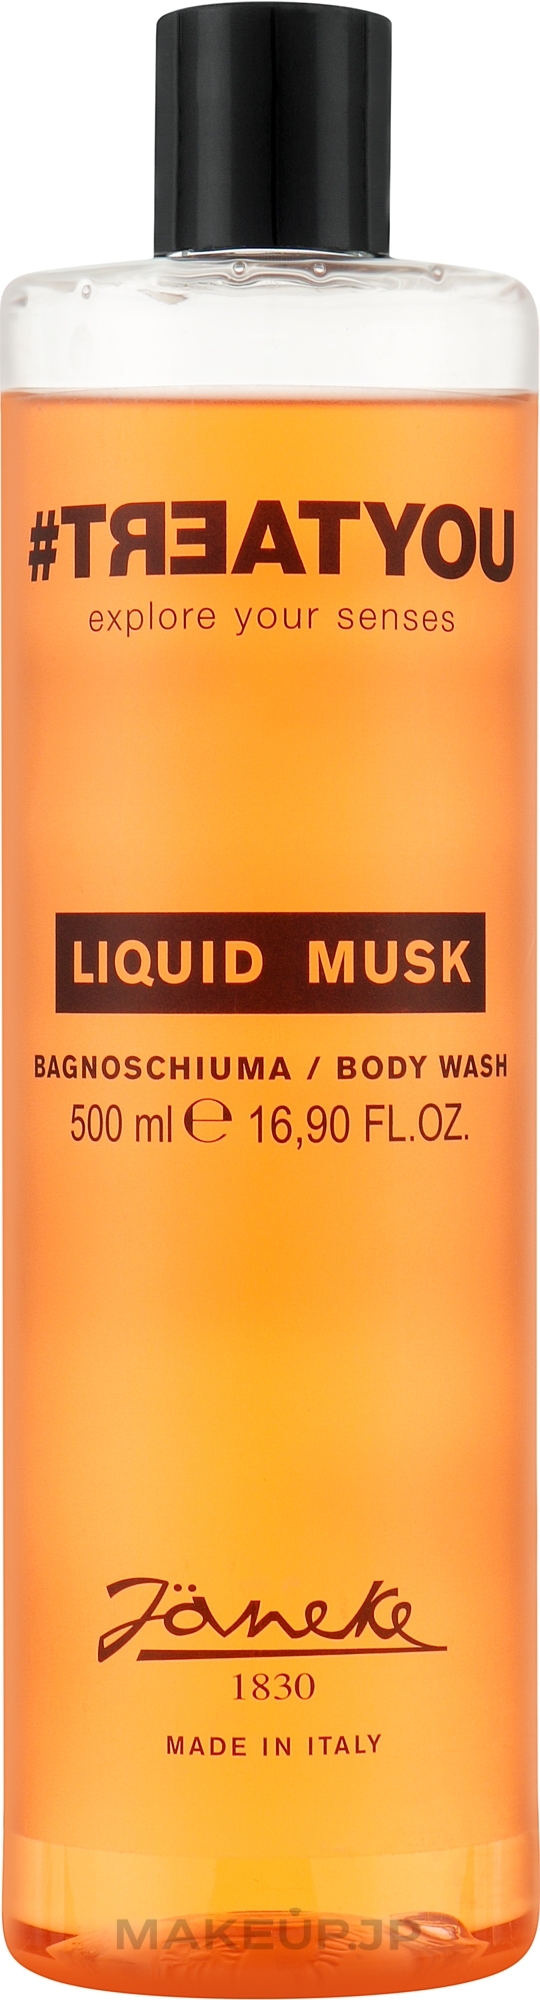 Shower Gel - Janeke #Treatyou Liquid Musk Body Wash — photo 500 ml